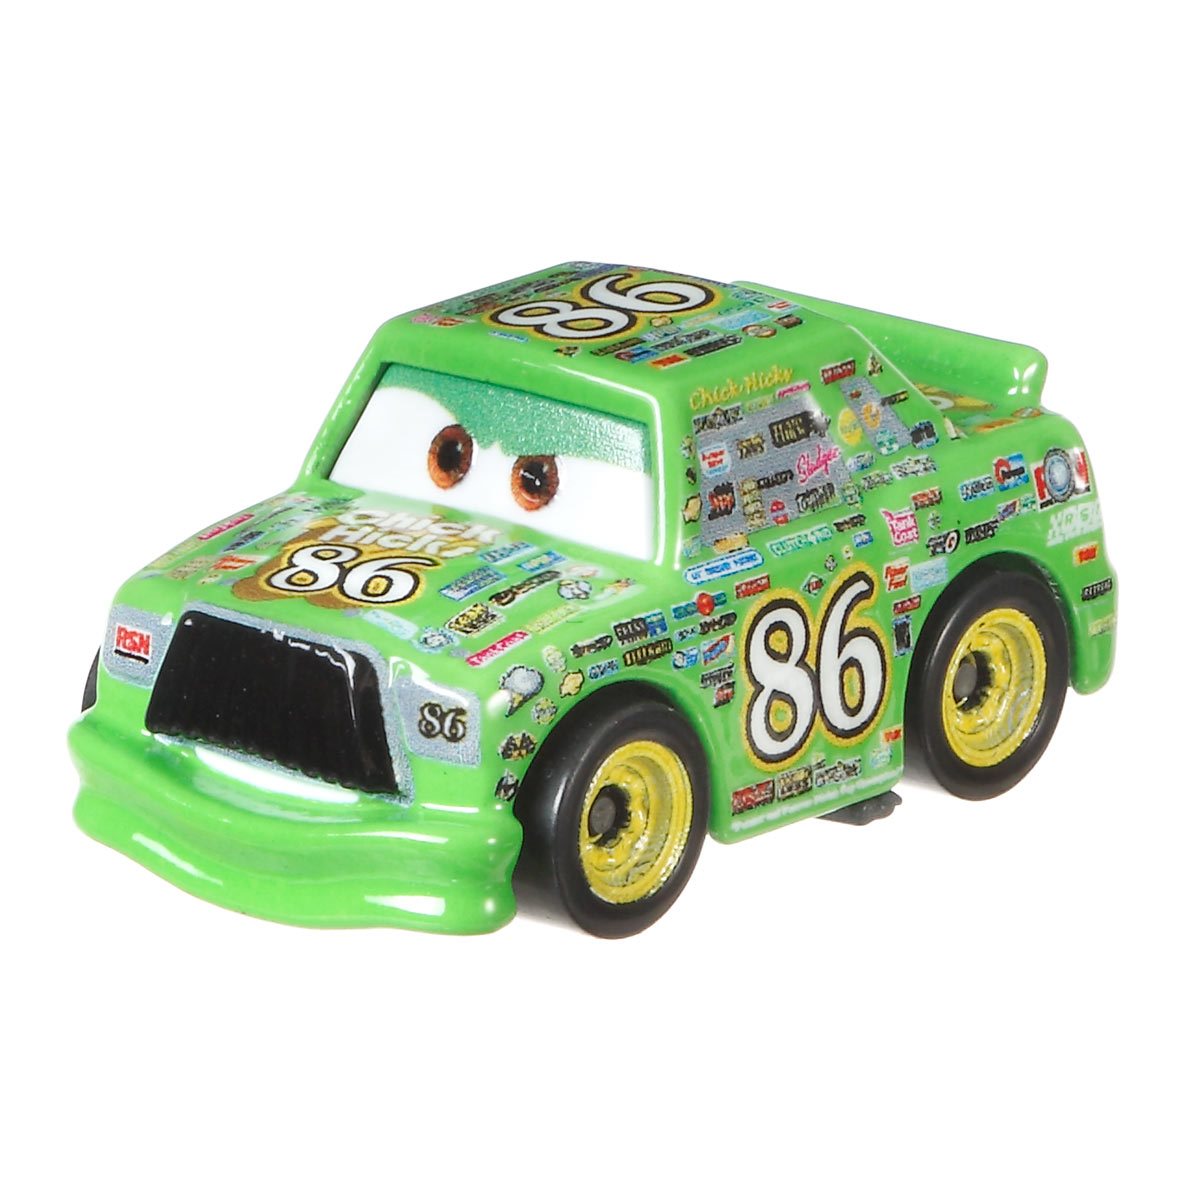 Машинка Mattel cars мини гонщики. Машинка Mattel cars Базовая мини-гонщик в блистере gkf65-963d. Мини гонщик. Коллекция Тачки мини. Мини тачки